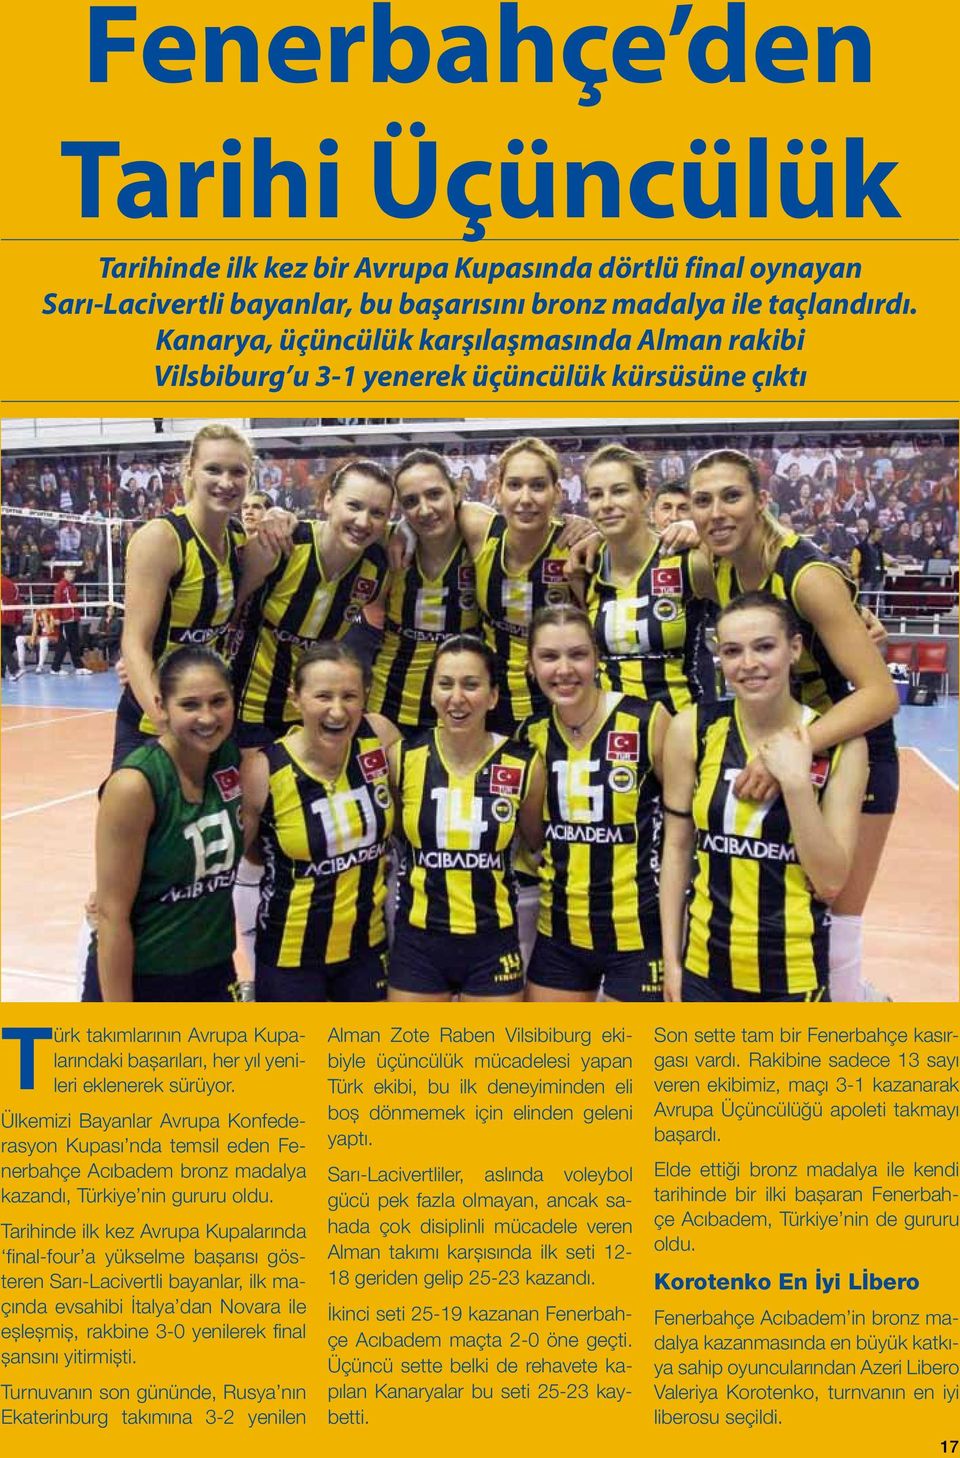 Ülkemizi Bayanlar Avrupa Konfederasyon Kupası nda temsil eden Fenerbahçe Acıbadem bronz madalya kazandı, Türkiye nin gururu oldu.